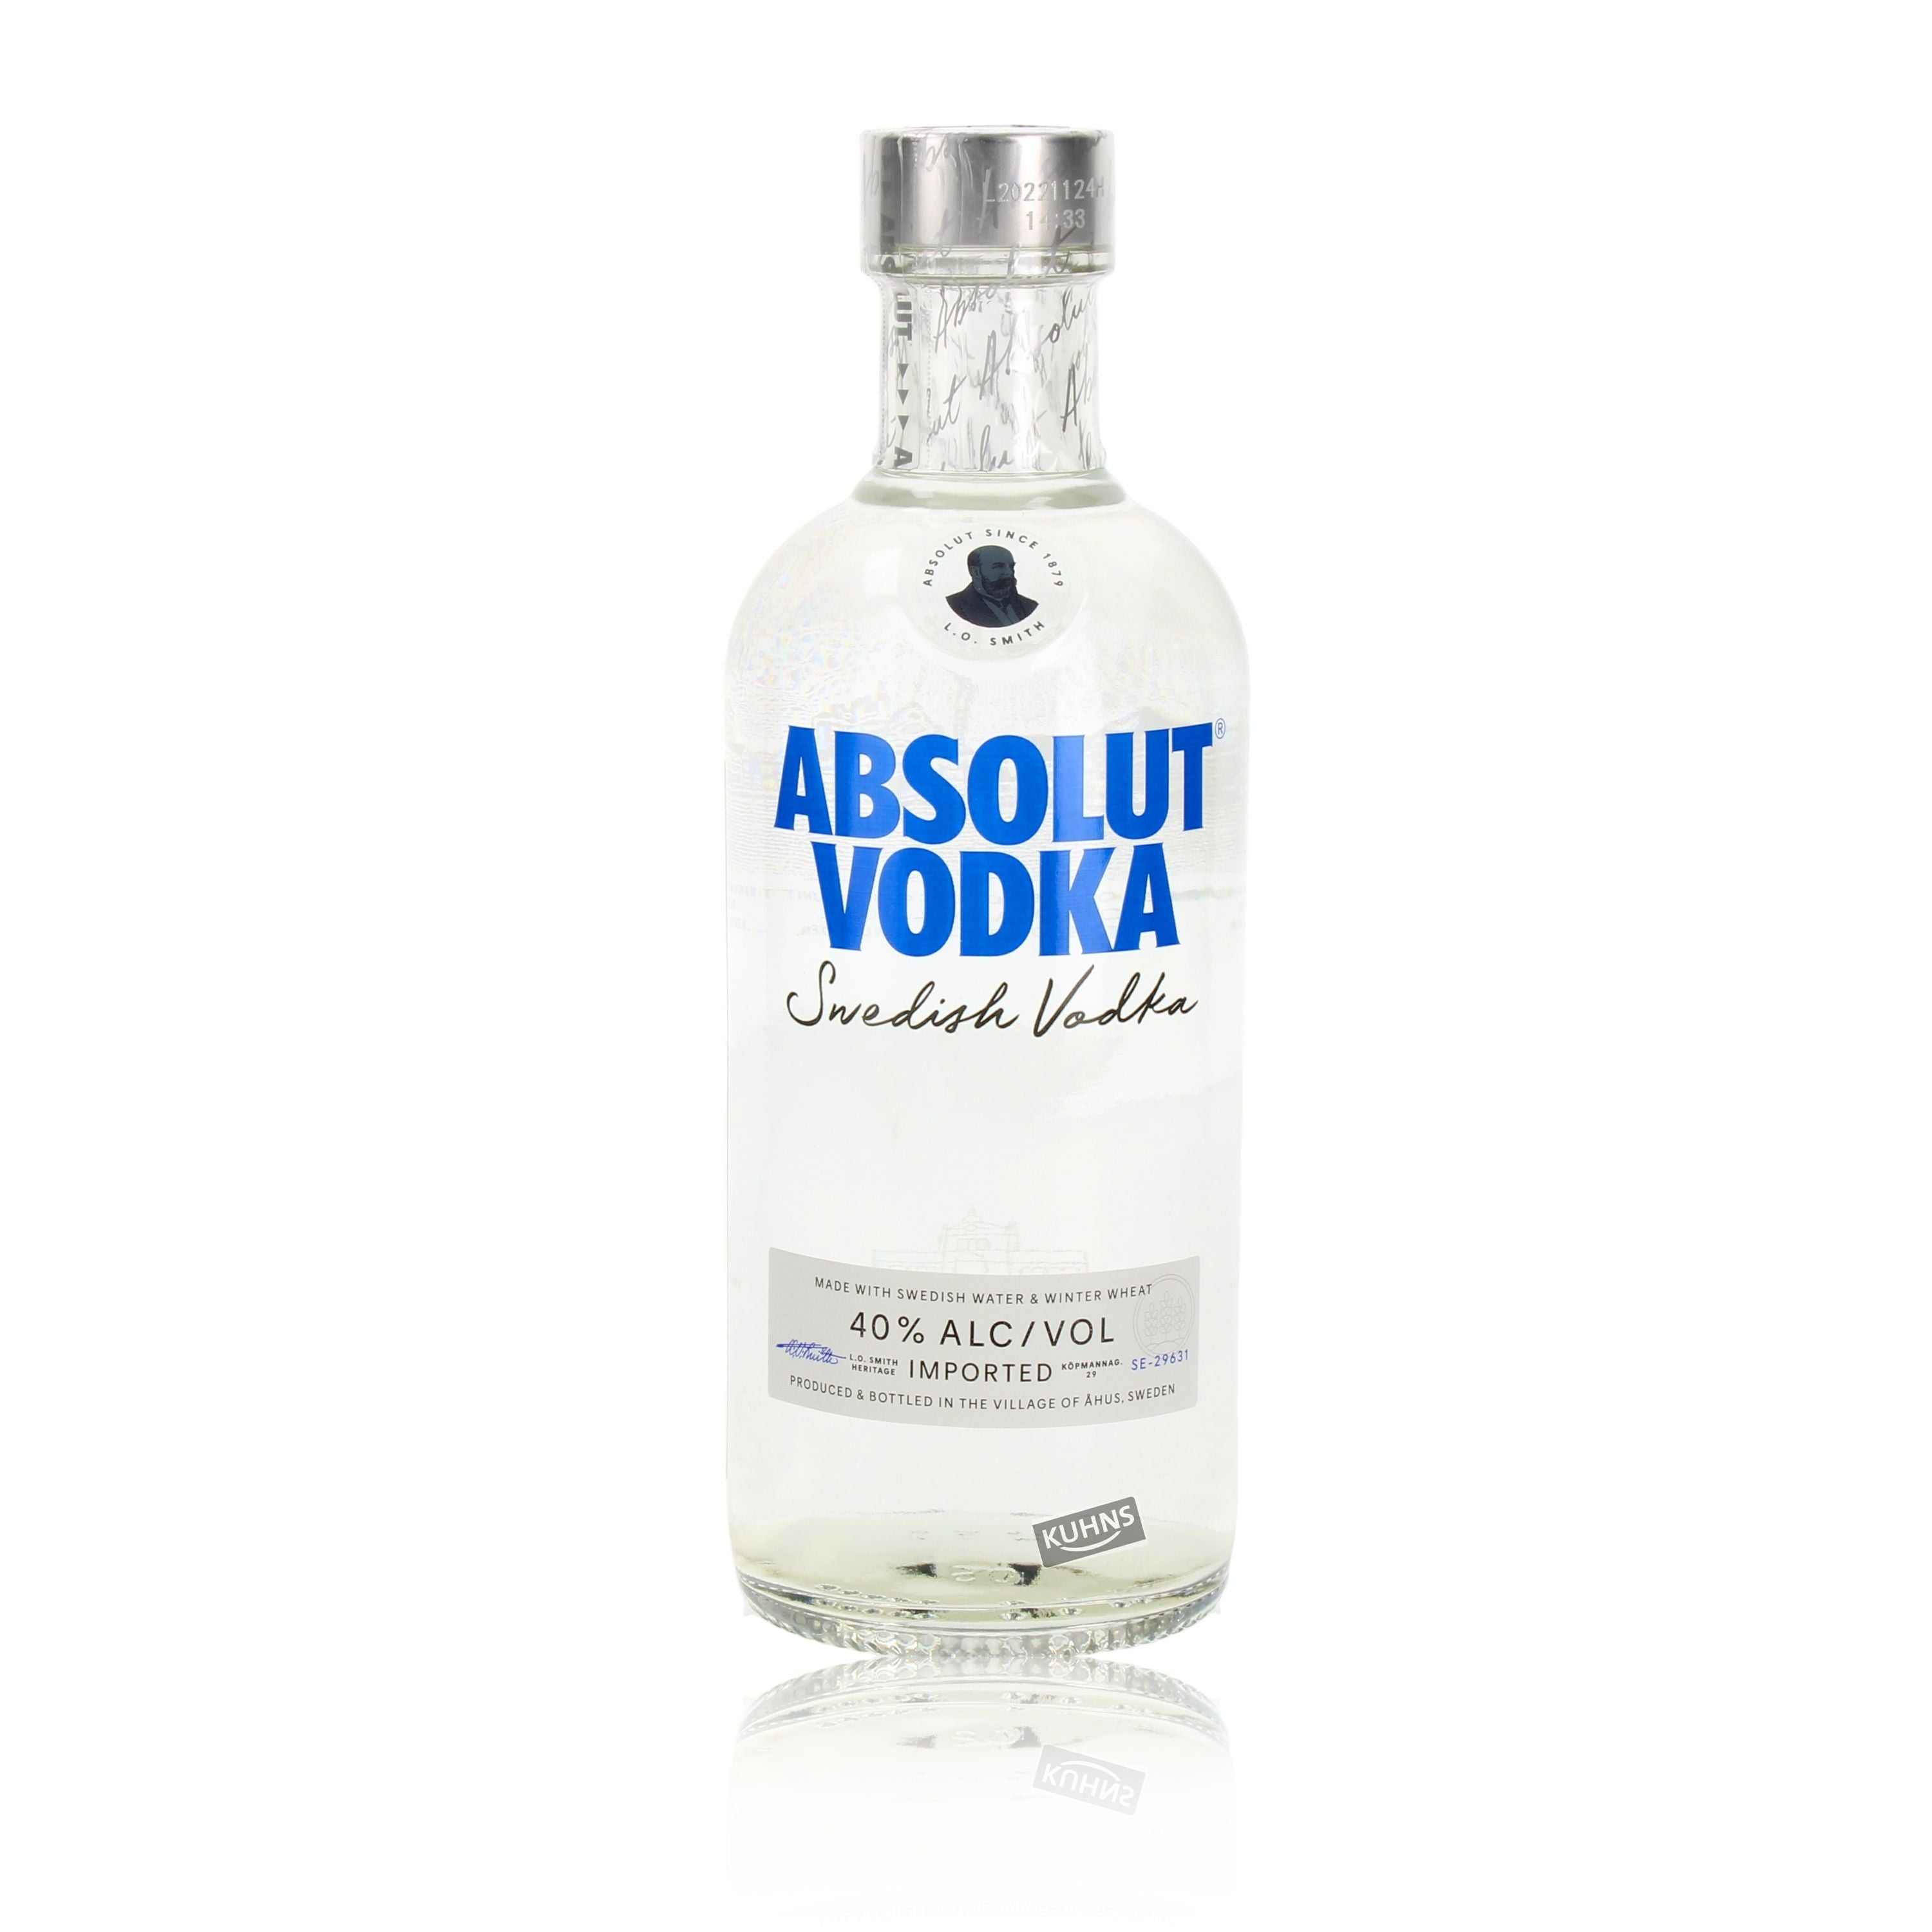 Absolut Vodka 0,5 litraa alk. 40 tilavuusprosenttia, vodka Ruotsi